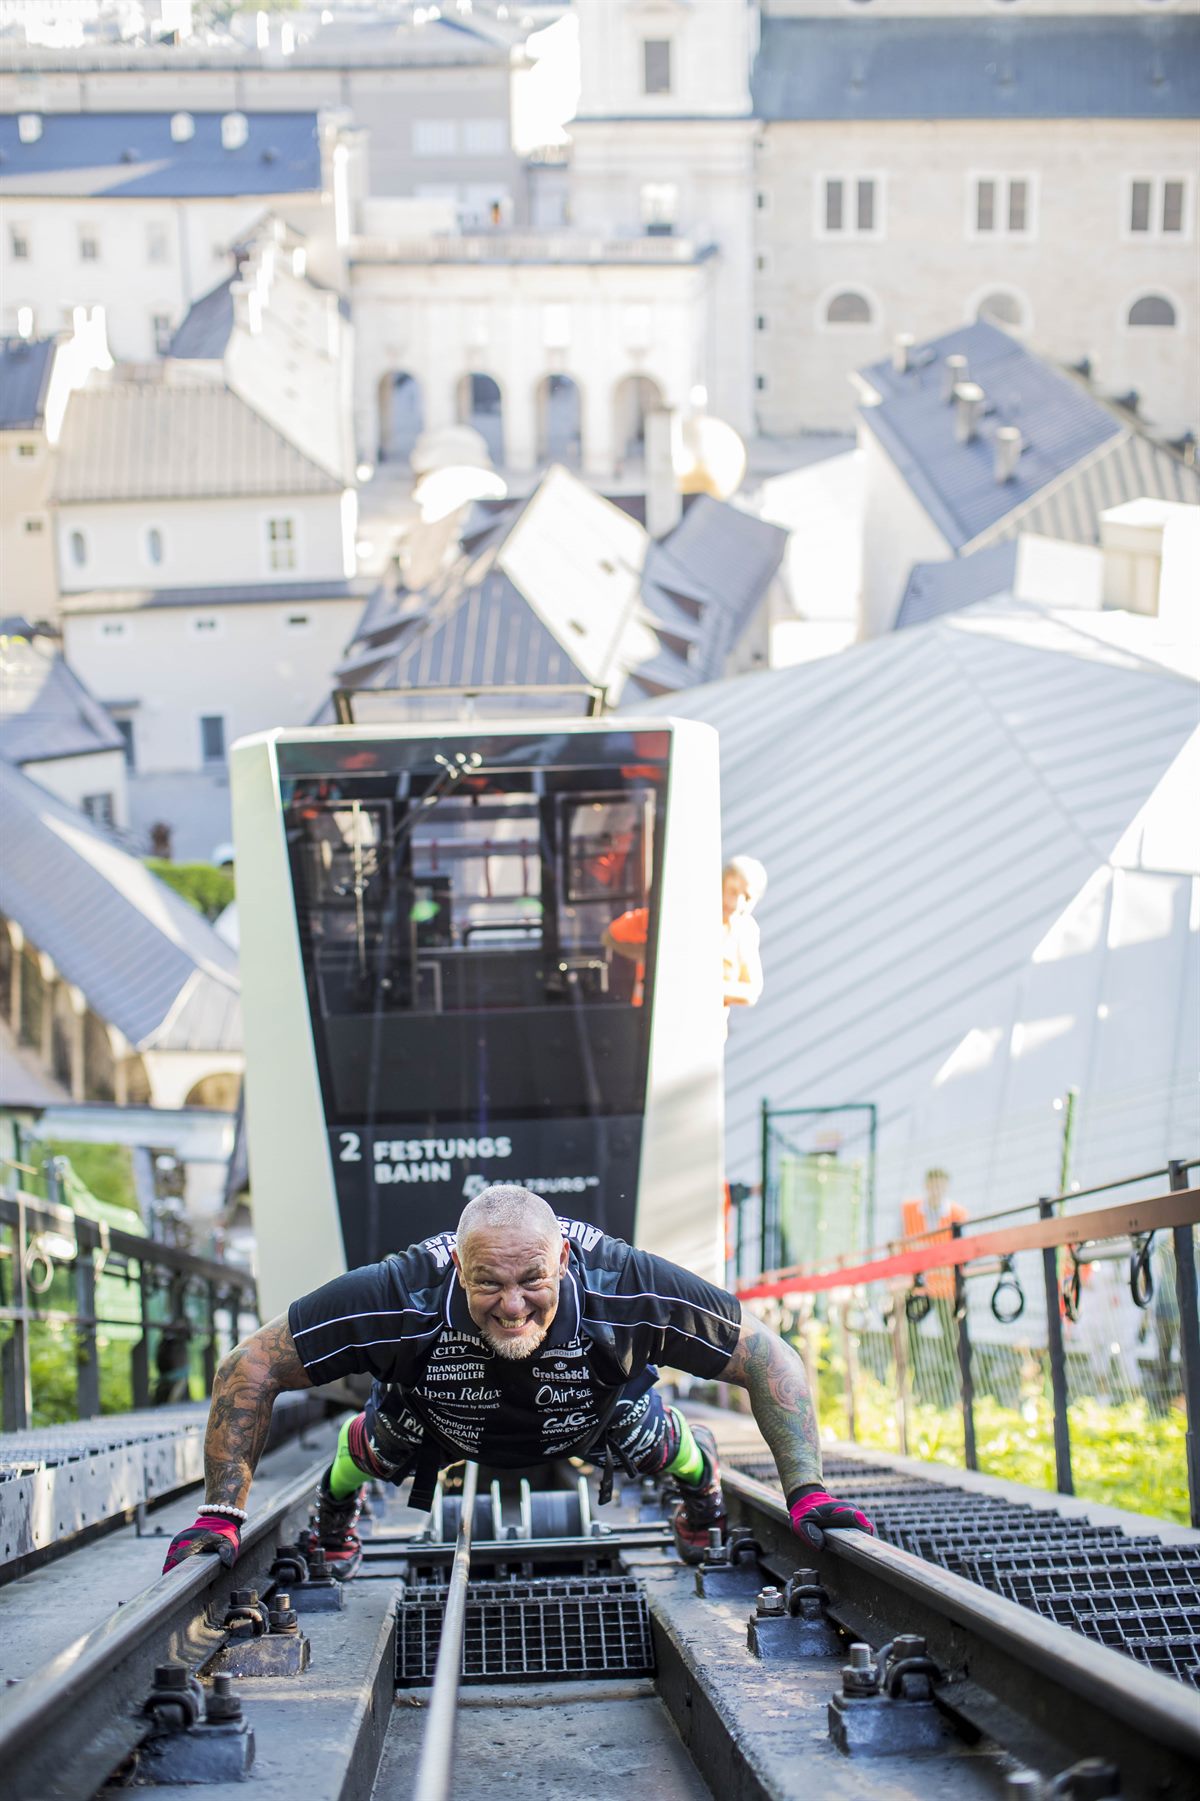 Extremsportler Franz Müllner hat heute am 24. Juli 2019 die Salzburger FestungsBahn, Österreichs älteste Standseilbahn, mit eigenen Kräften nach oben gezogen. 